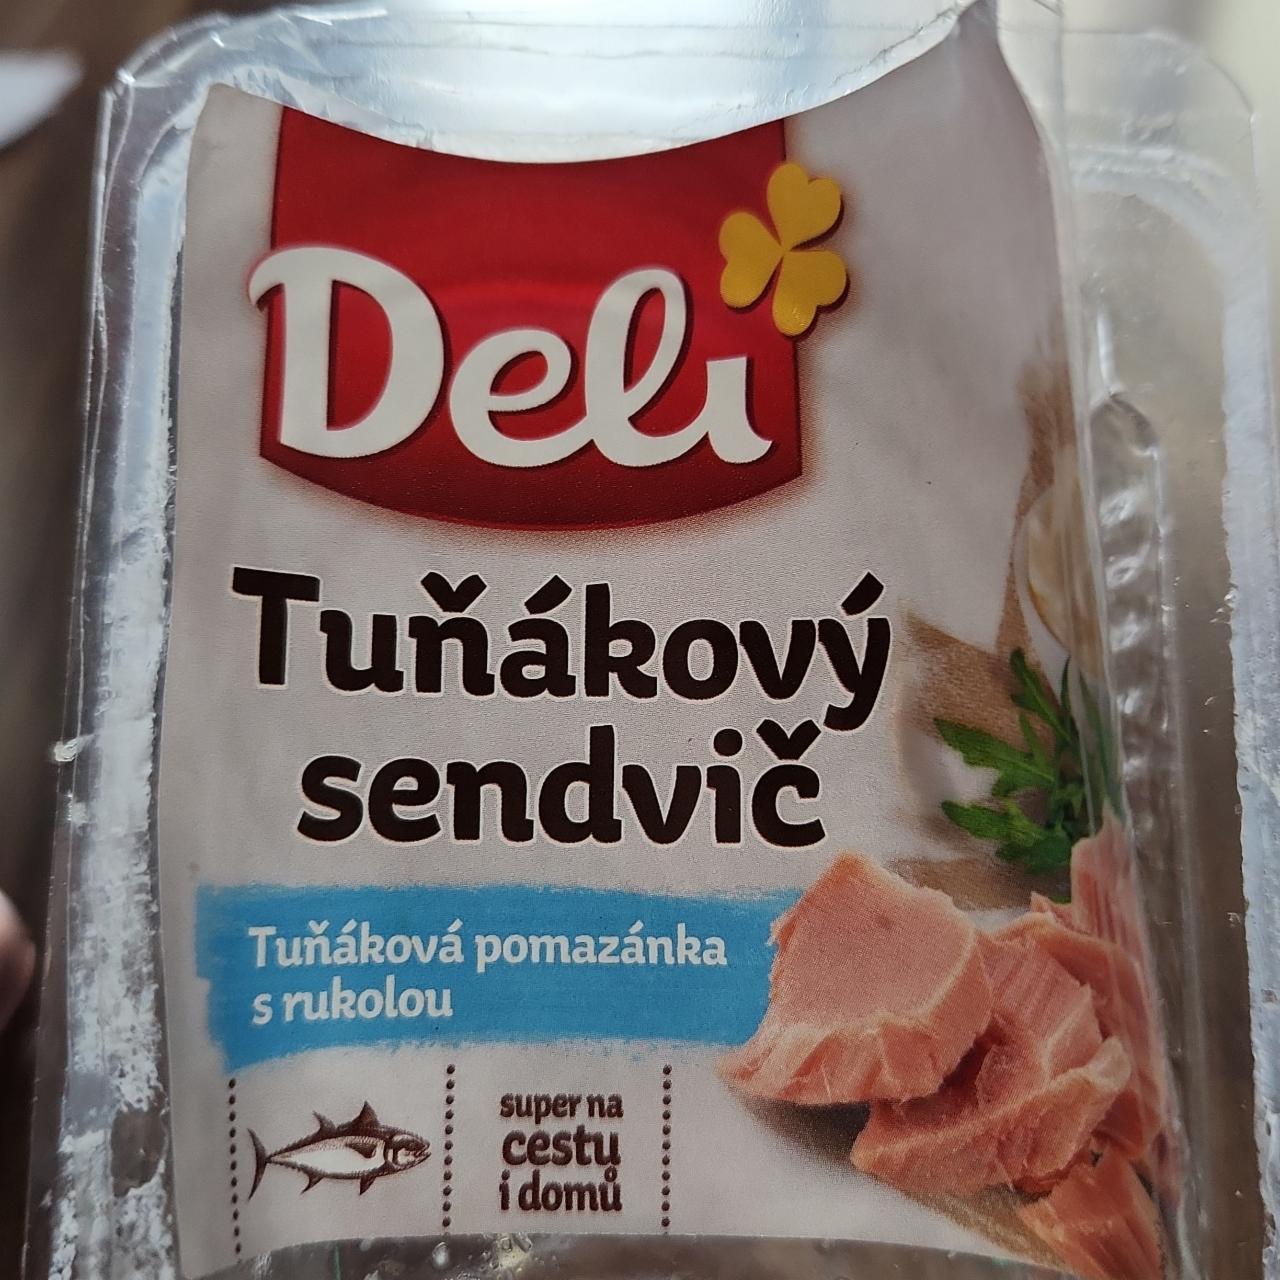 Фото - сендвич с тунцом и рукколой Deli